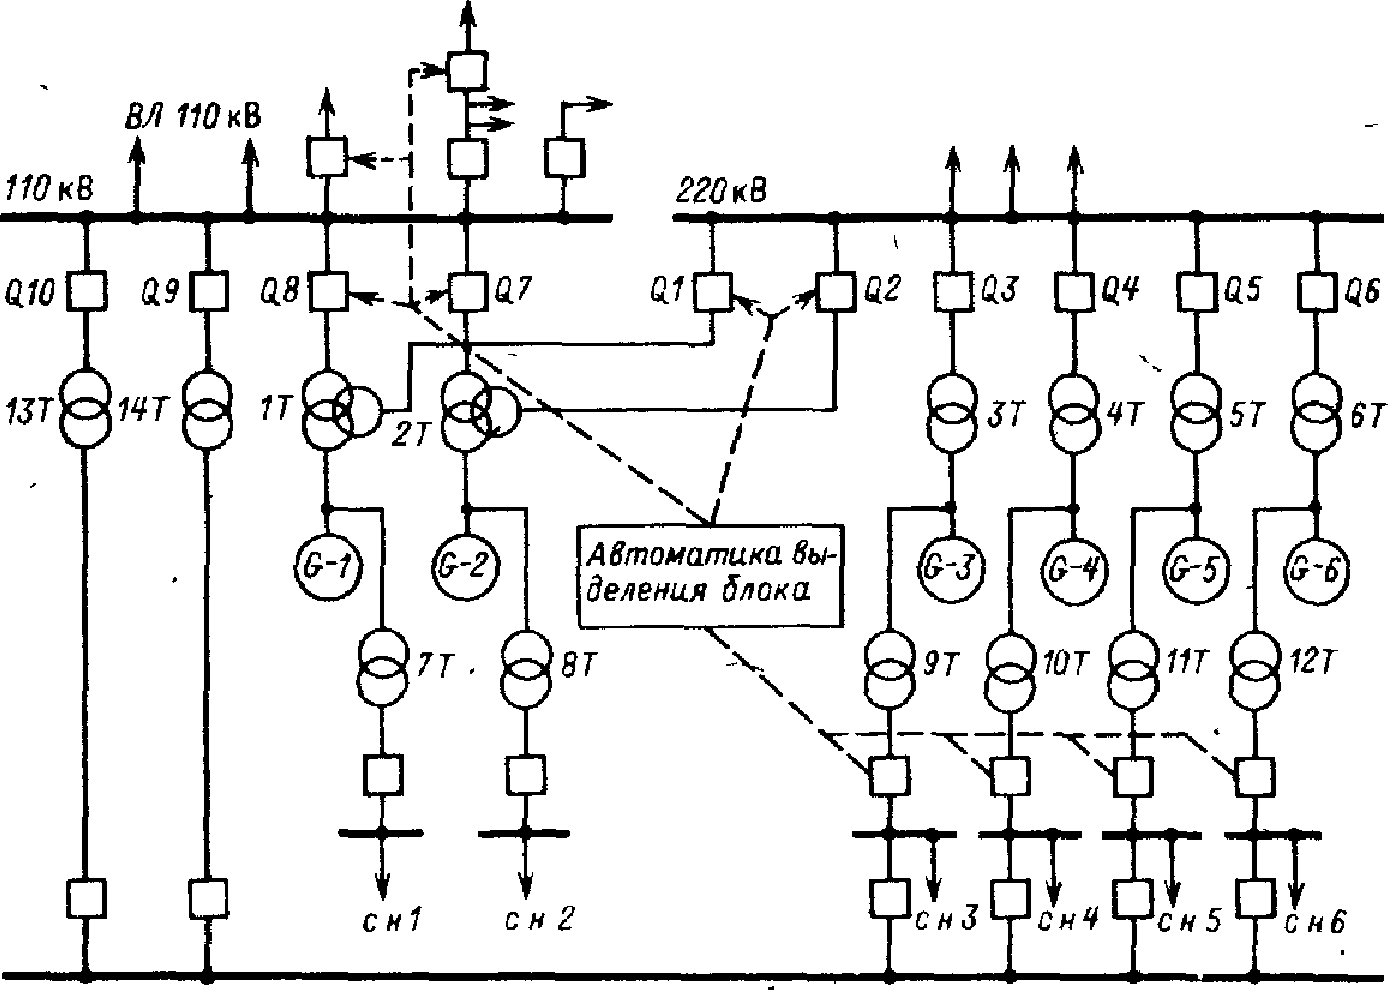 схема блочной ГРЭС с автоматикой выделения блока